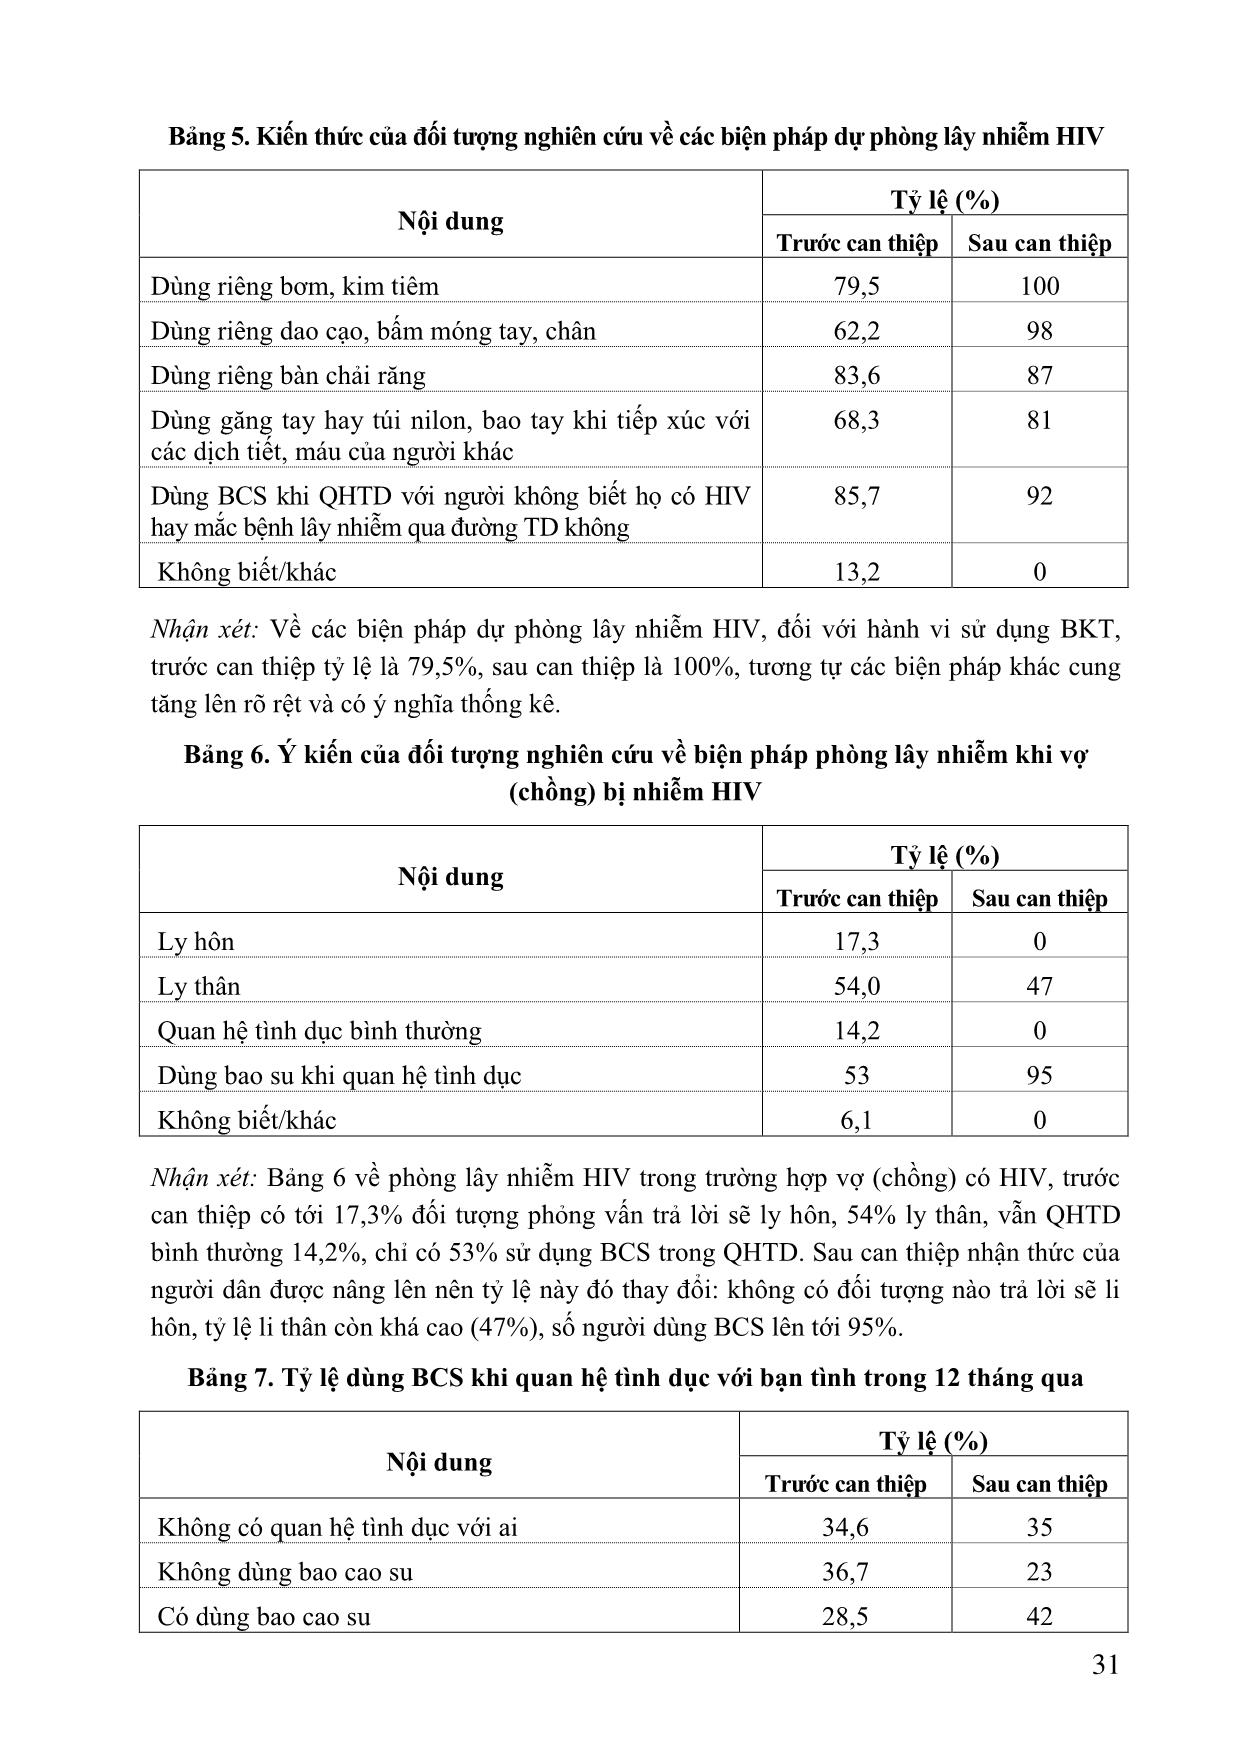 Đánh giá hiệu quả các hoạt động truyền thông thay đổi hành vi trong phòng chống HIV/AIDS tại xã Gia Sinh năm 2009-2010 trang 5